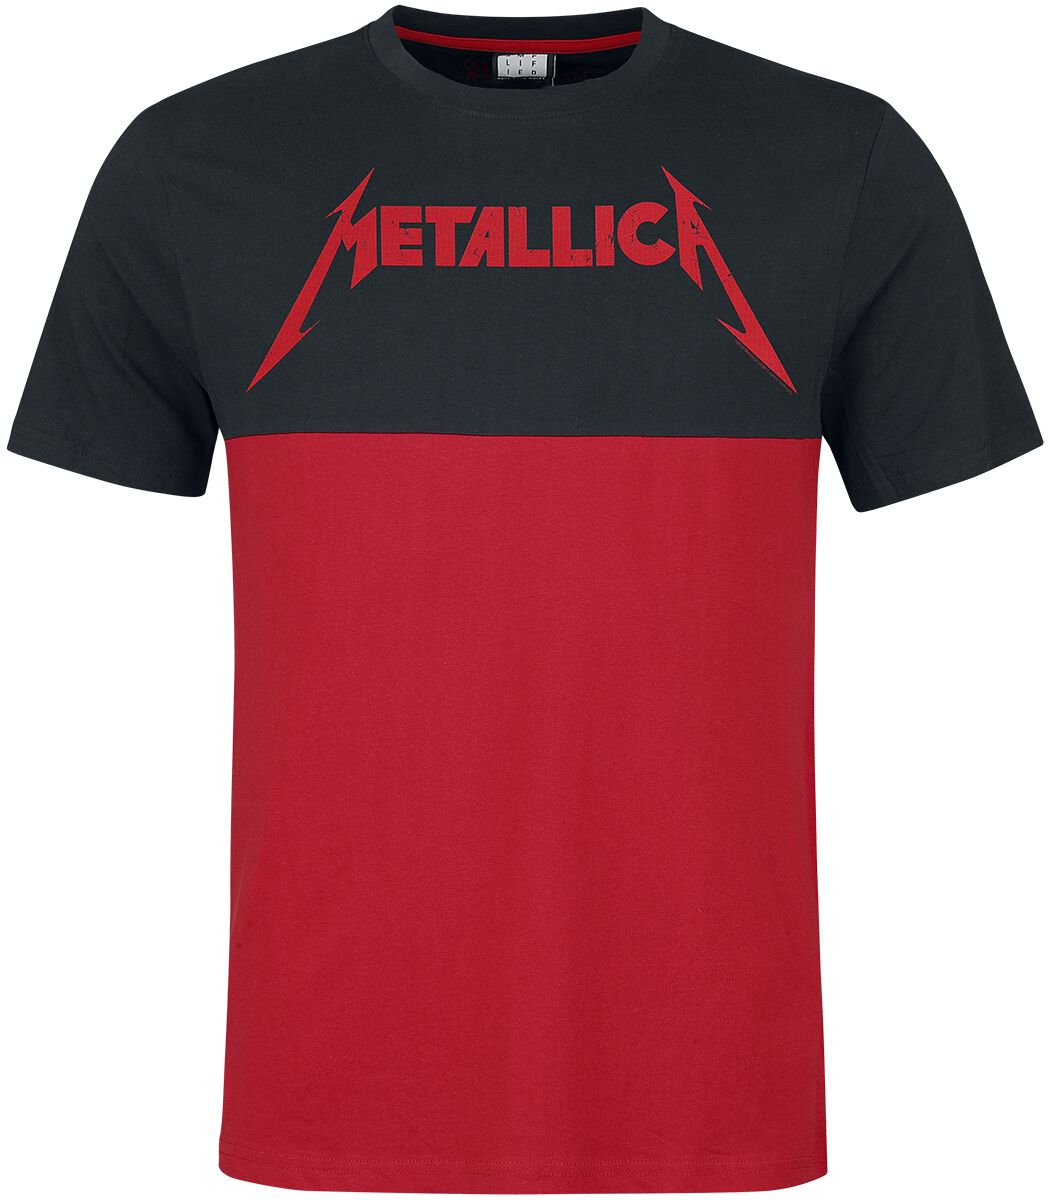 Metallica T-Shirt - Amplified Collection - Kill `Em All - S bis M - für Männer - Größe M - schwarz/rot  - Lizenziertes Merchandise!